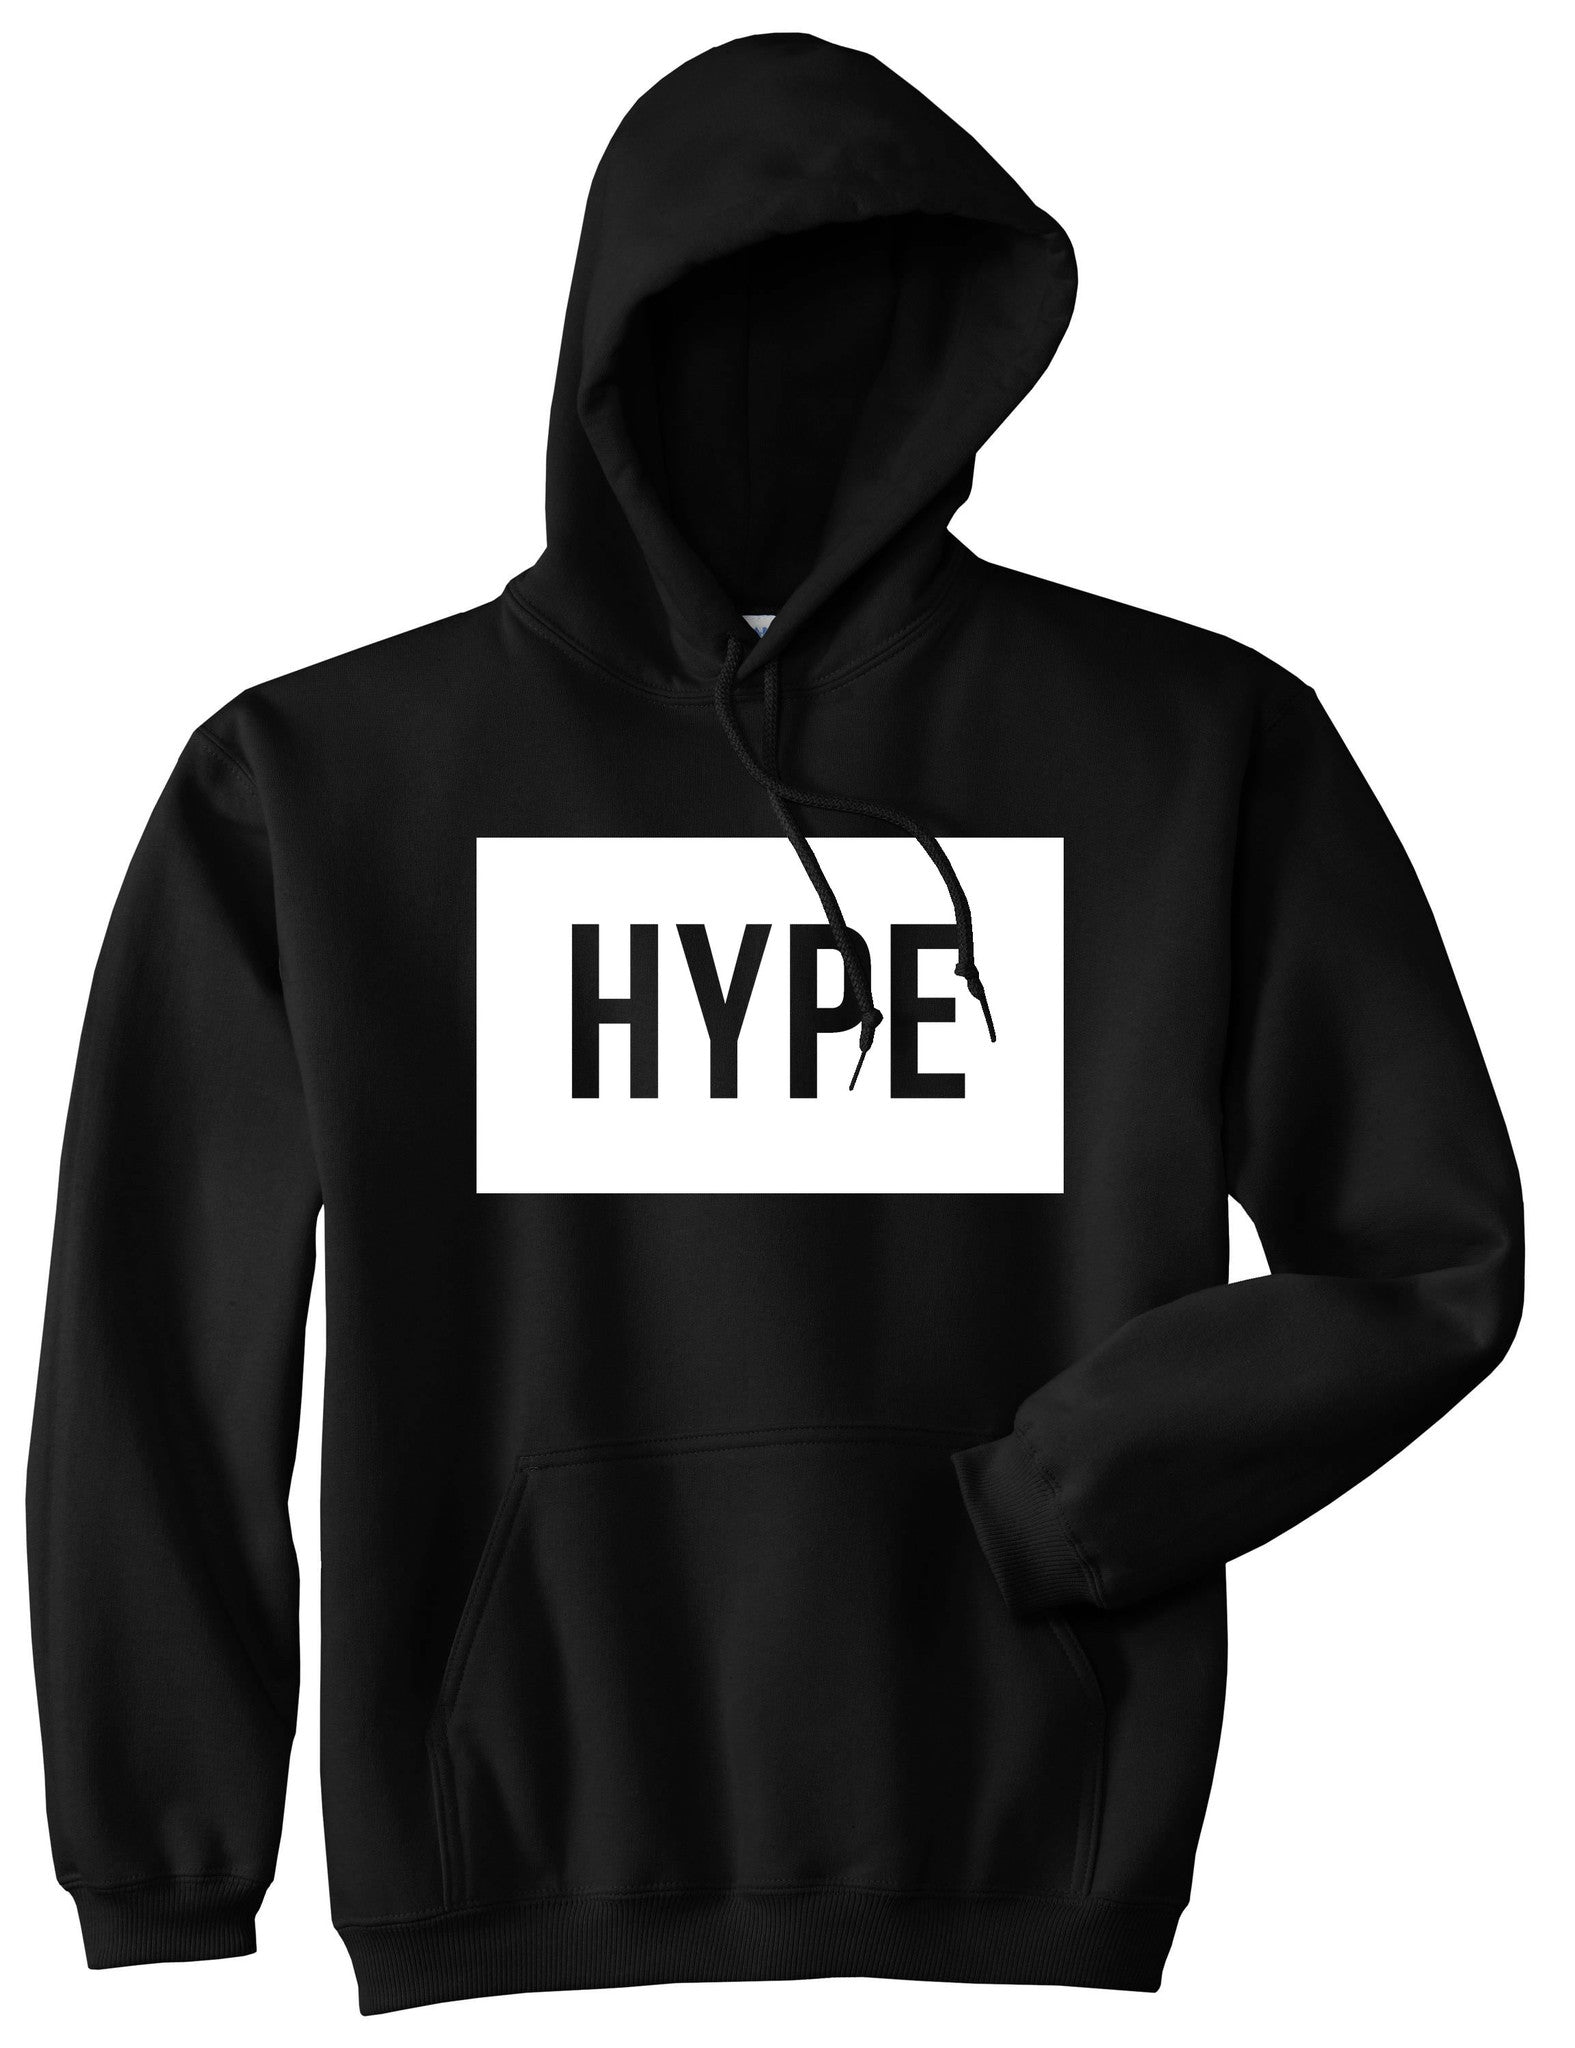 hype kids hoodie > OFF-62%